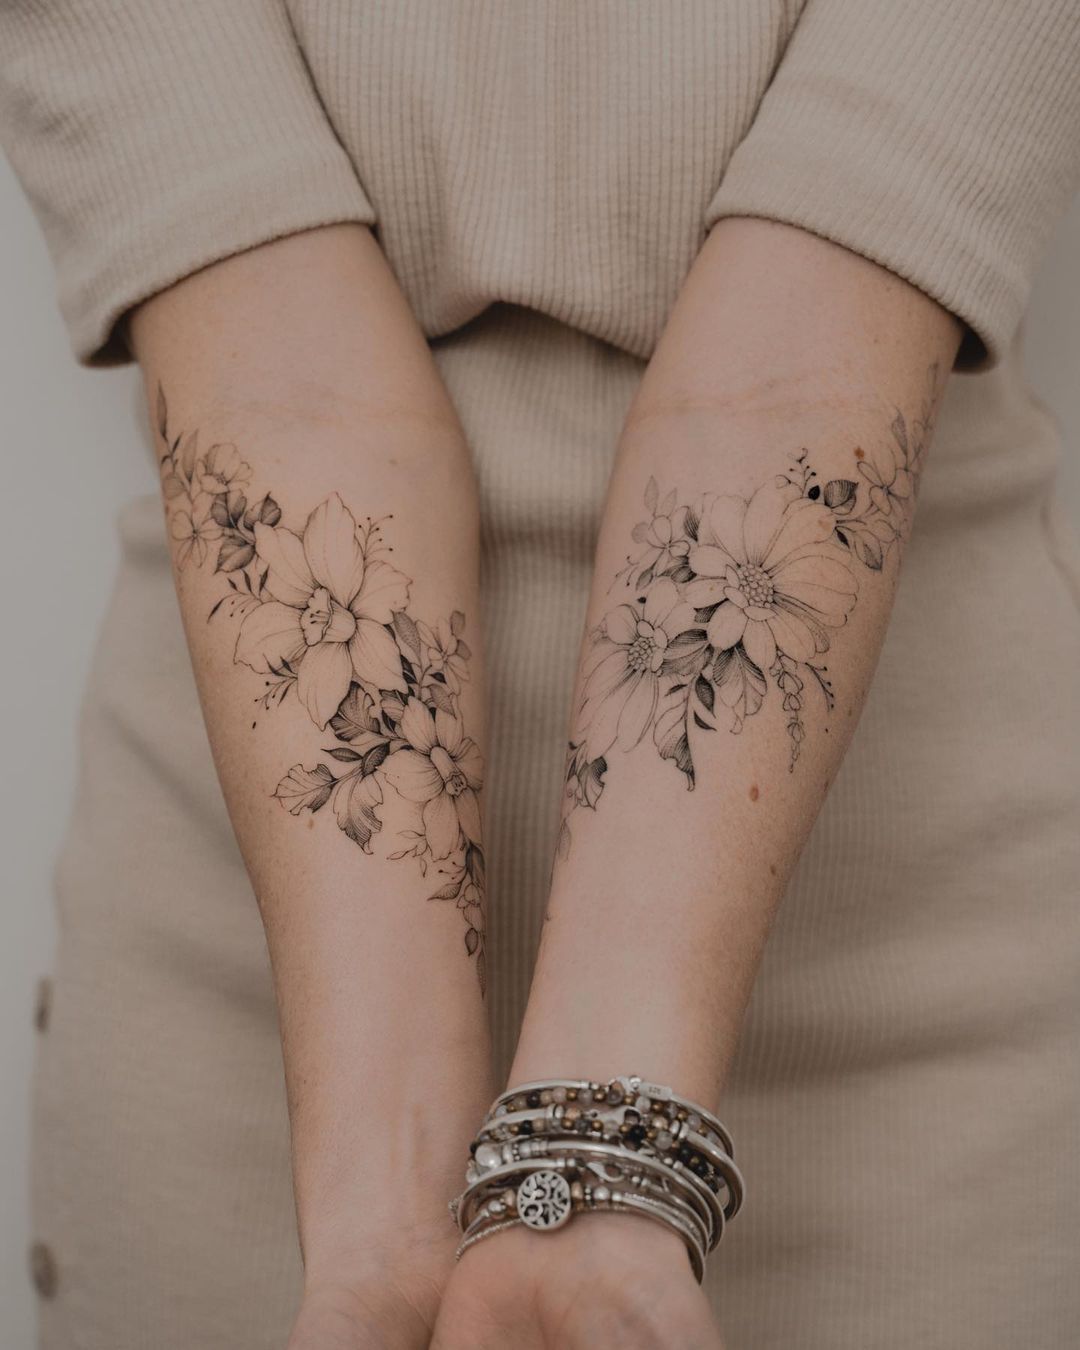 Fine line flower tattoo on the inner forearm